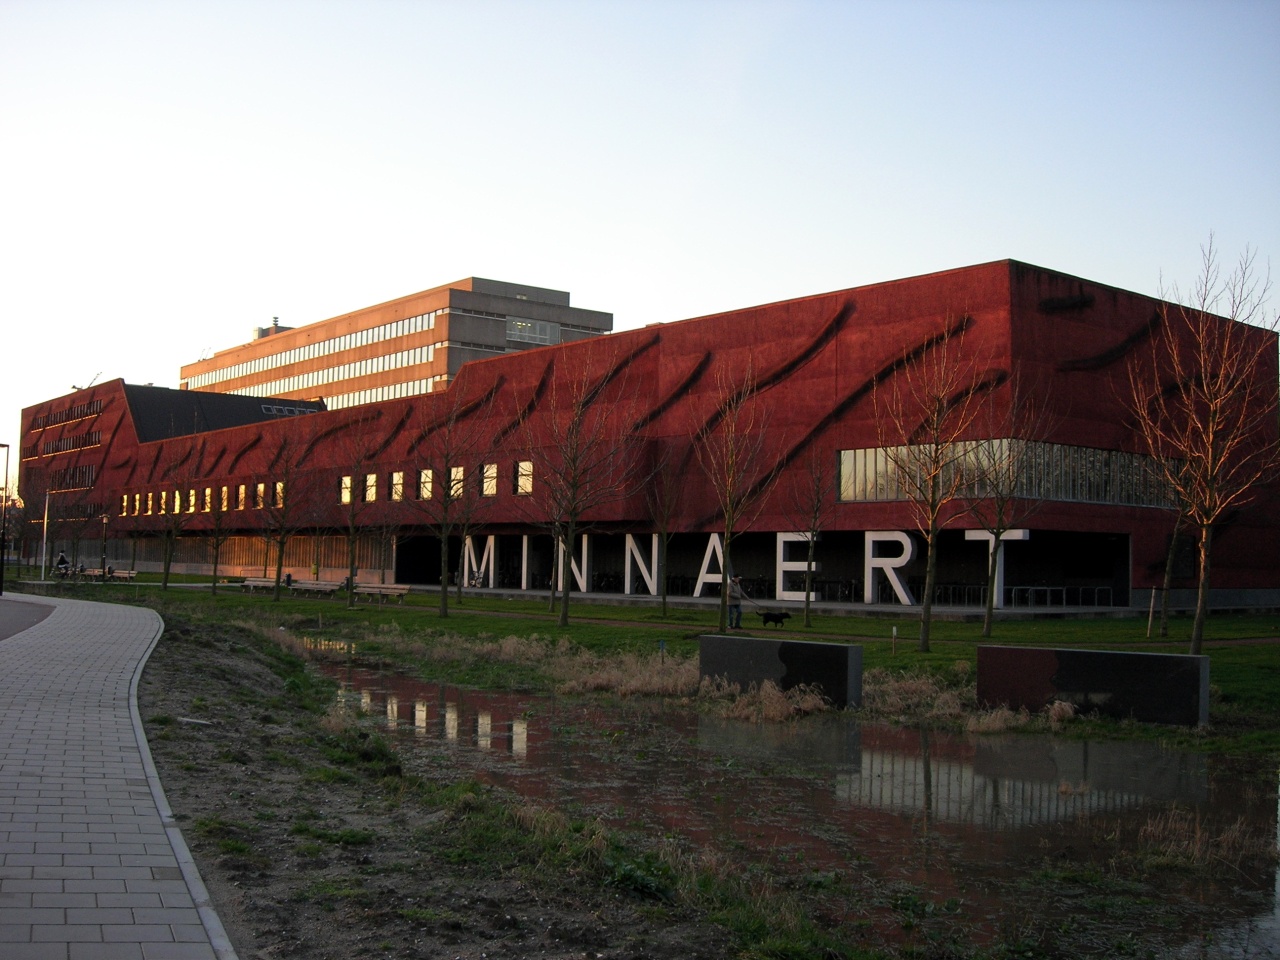 Minnaertgebouw - Faculdade de Ciências